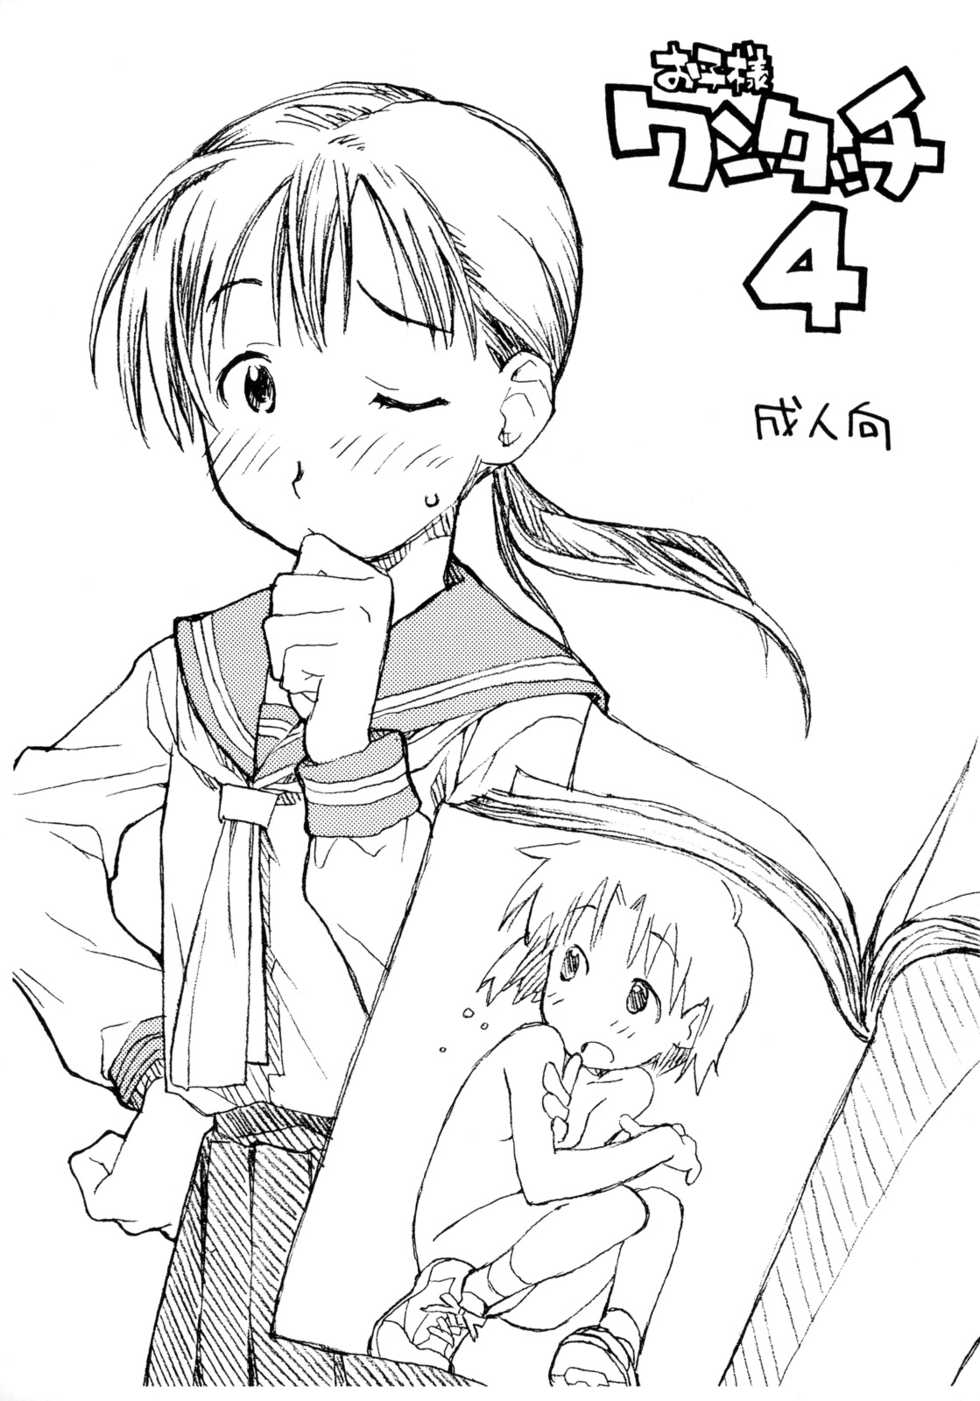 (Danmenzu Comic) [Okosama Lunch (Nishinozawa Kaorisuke, Hirayan)] Okosama One Touch 4 - Page 1